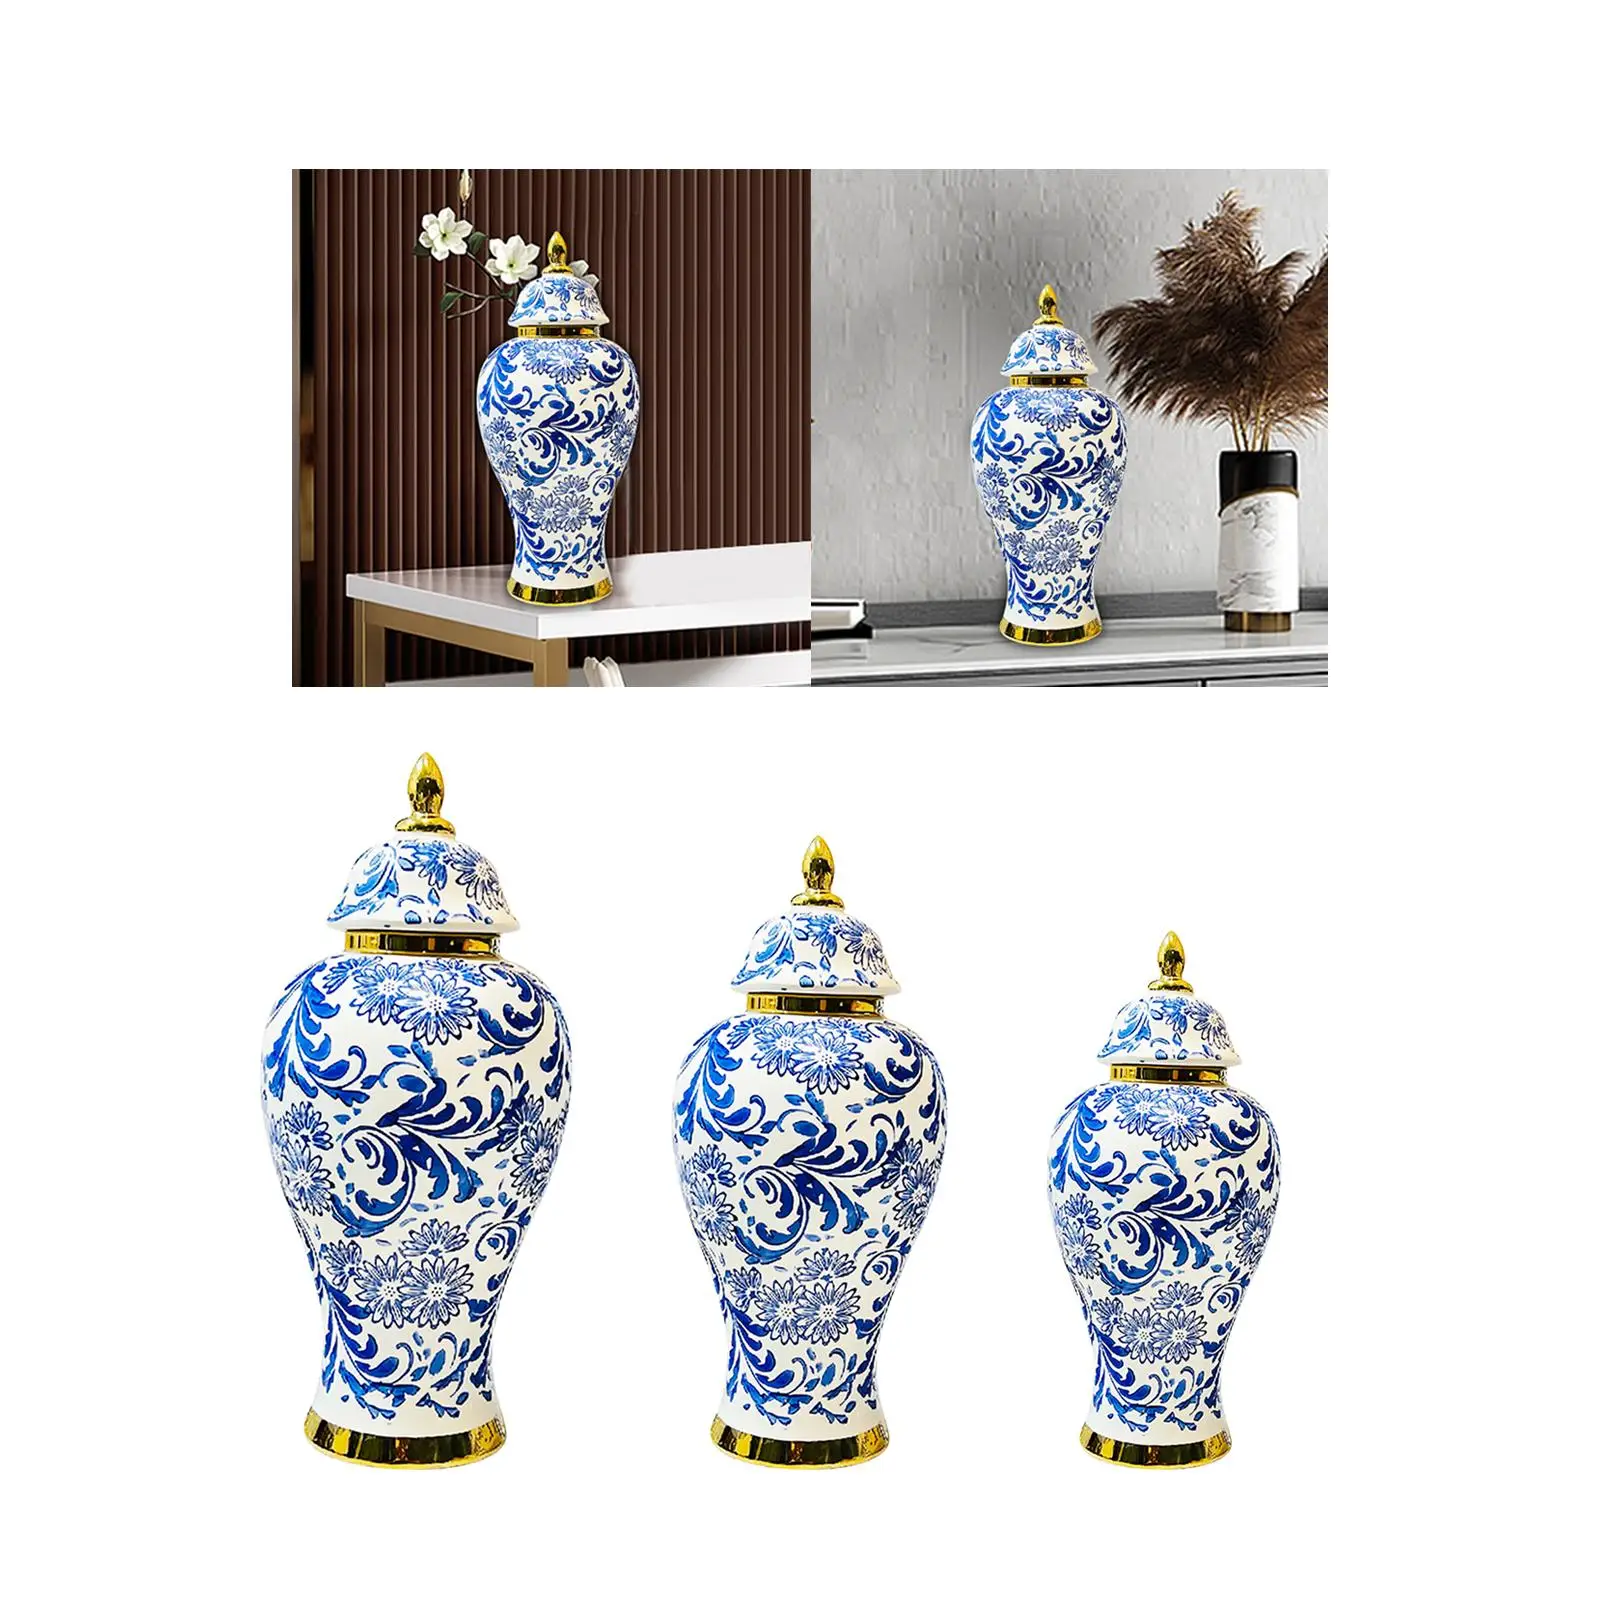 Ceramic Vase Chinese Decorative Accessories Porcelain Ginger Jar for Storage Tank Desk Flower Arrangement Weddings Bedroom